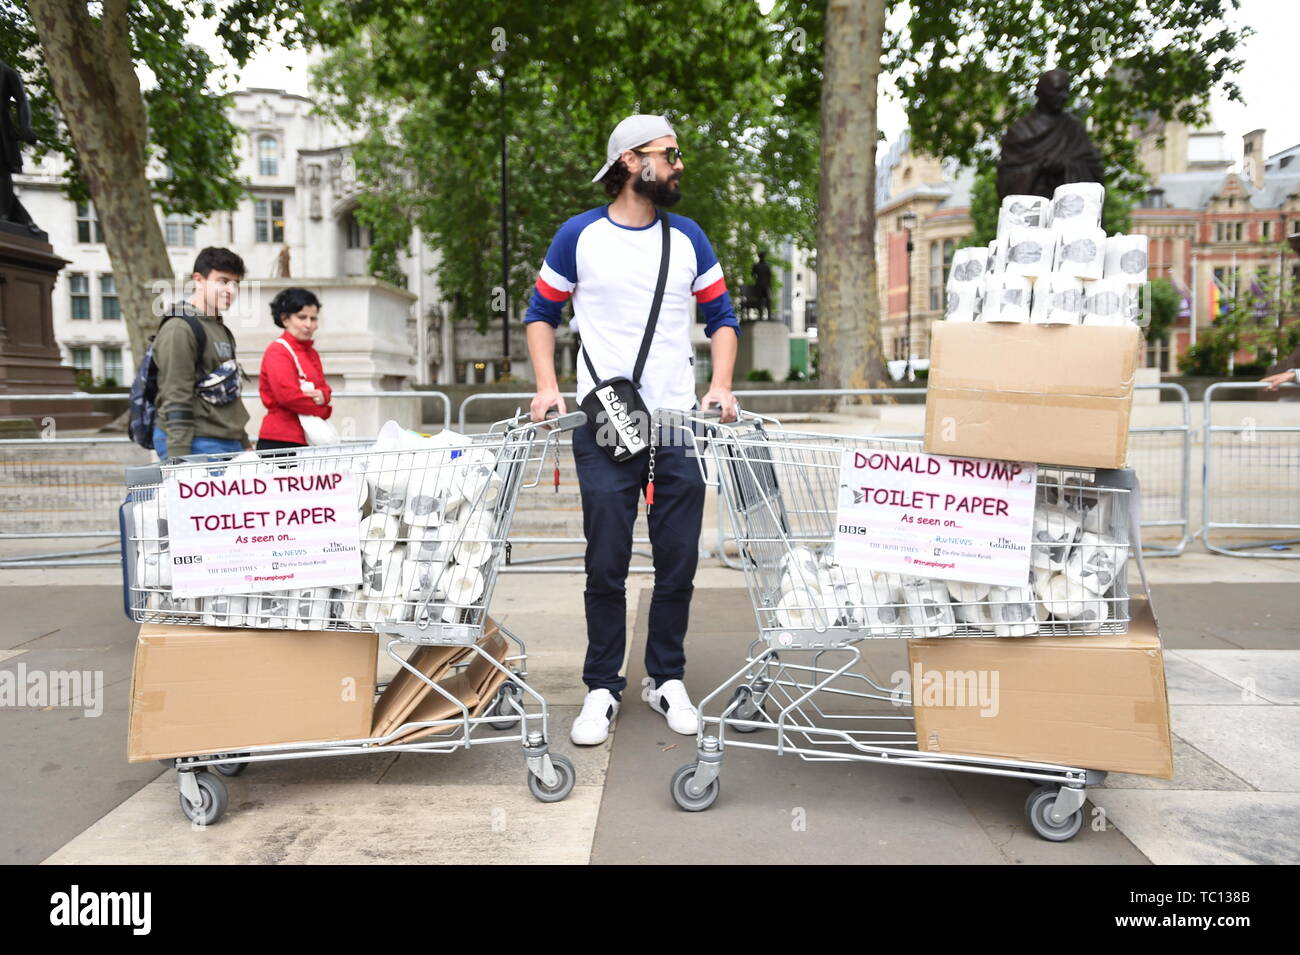 Un homme vend du papier toilette Donald Trump lors de manifestations dans la région de Parliament Square, London le deuxième jour de la visite d'Etat au Royaume-Uni par le président américain, Donald Trump. Banque D'Images